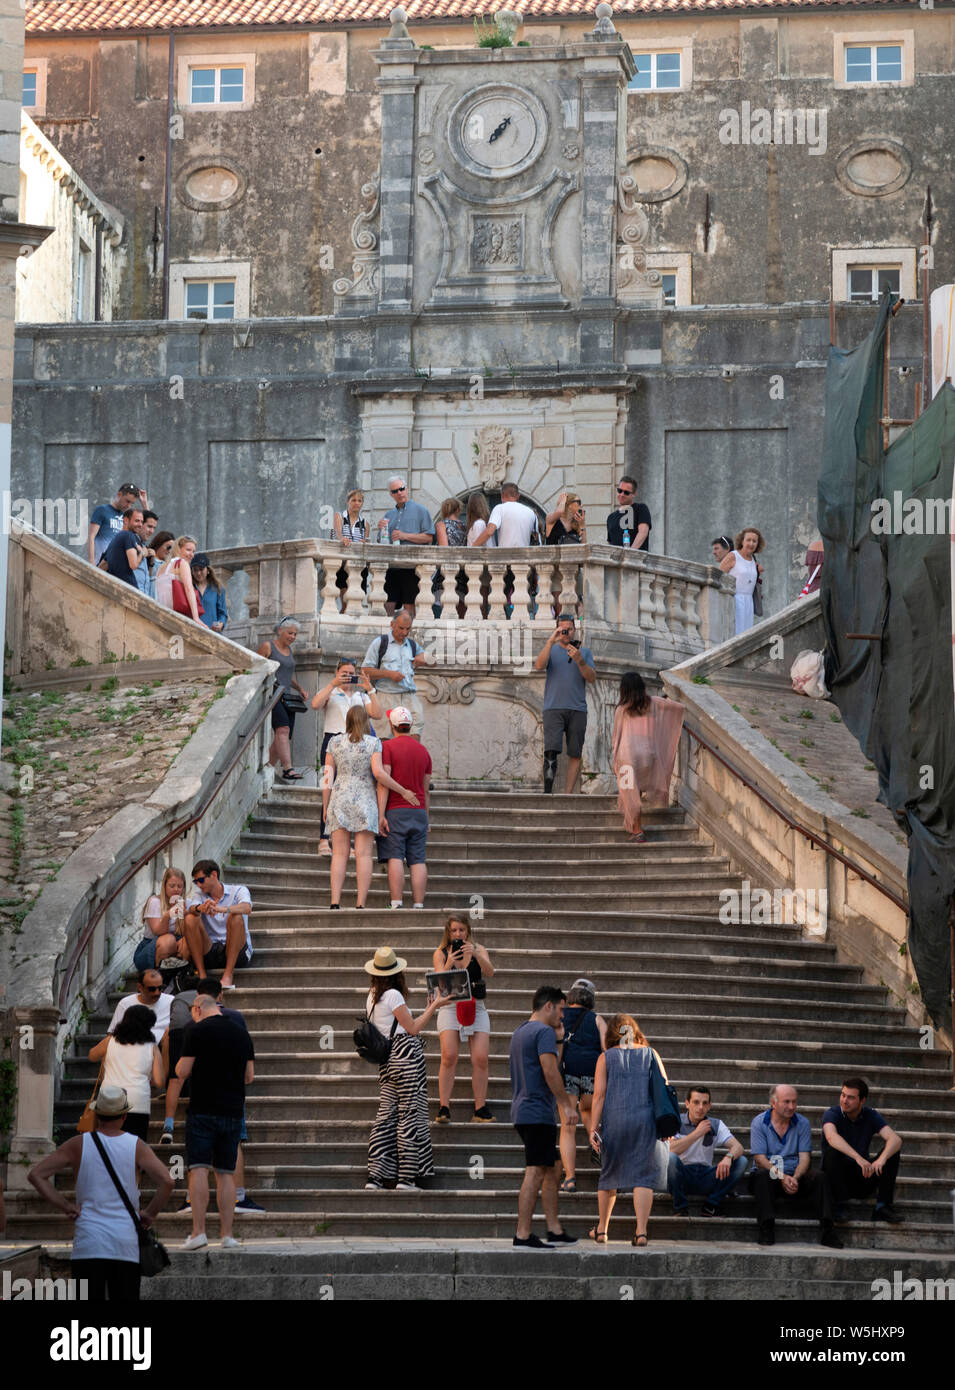 Jesuiten Treppe, Altstadt, Dubrovnik, Kroatien Stockfoto